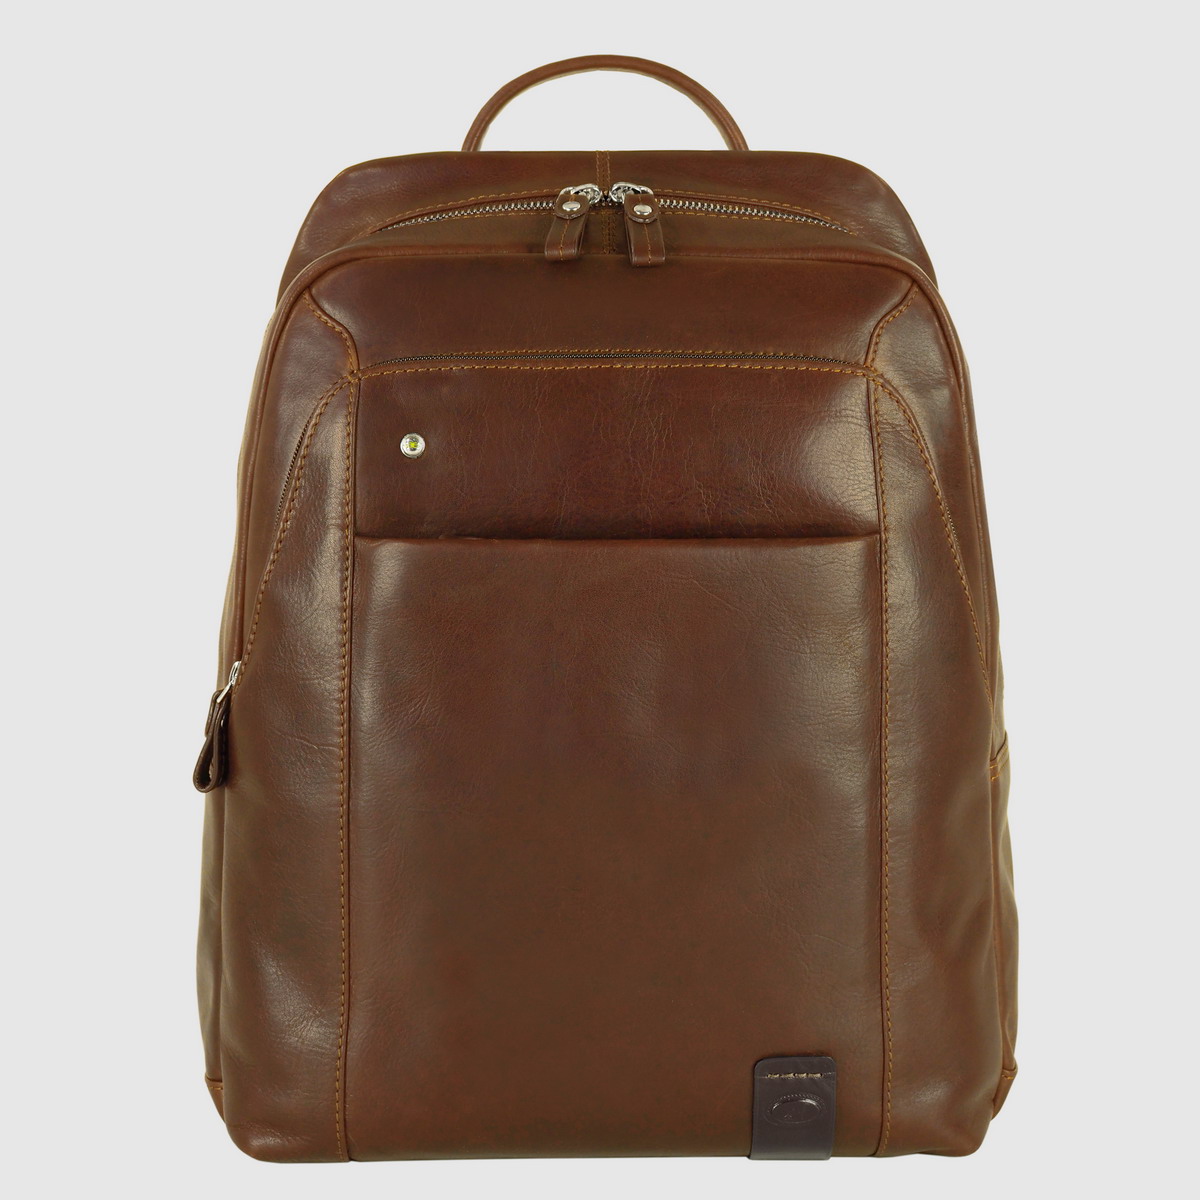 laptop leather backpack ergonomic